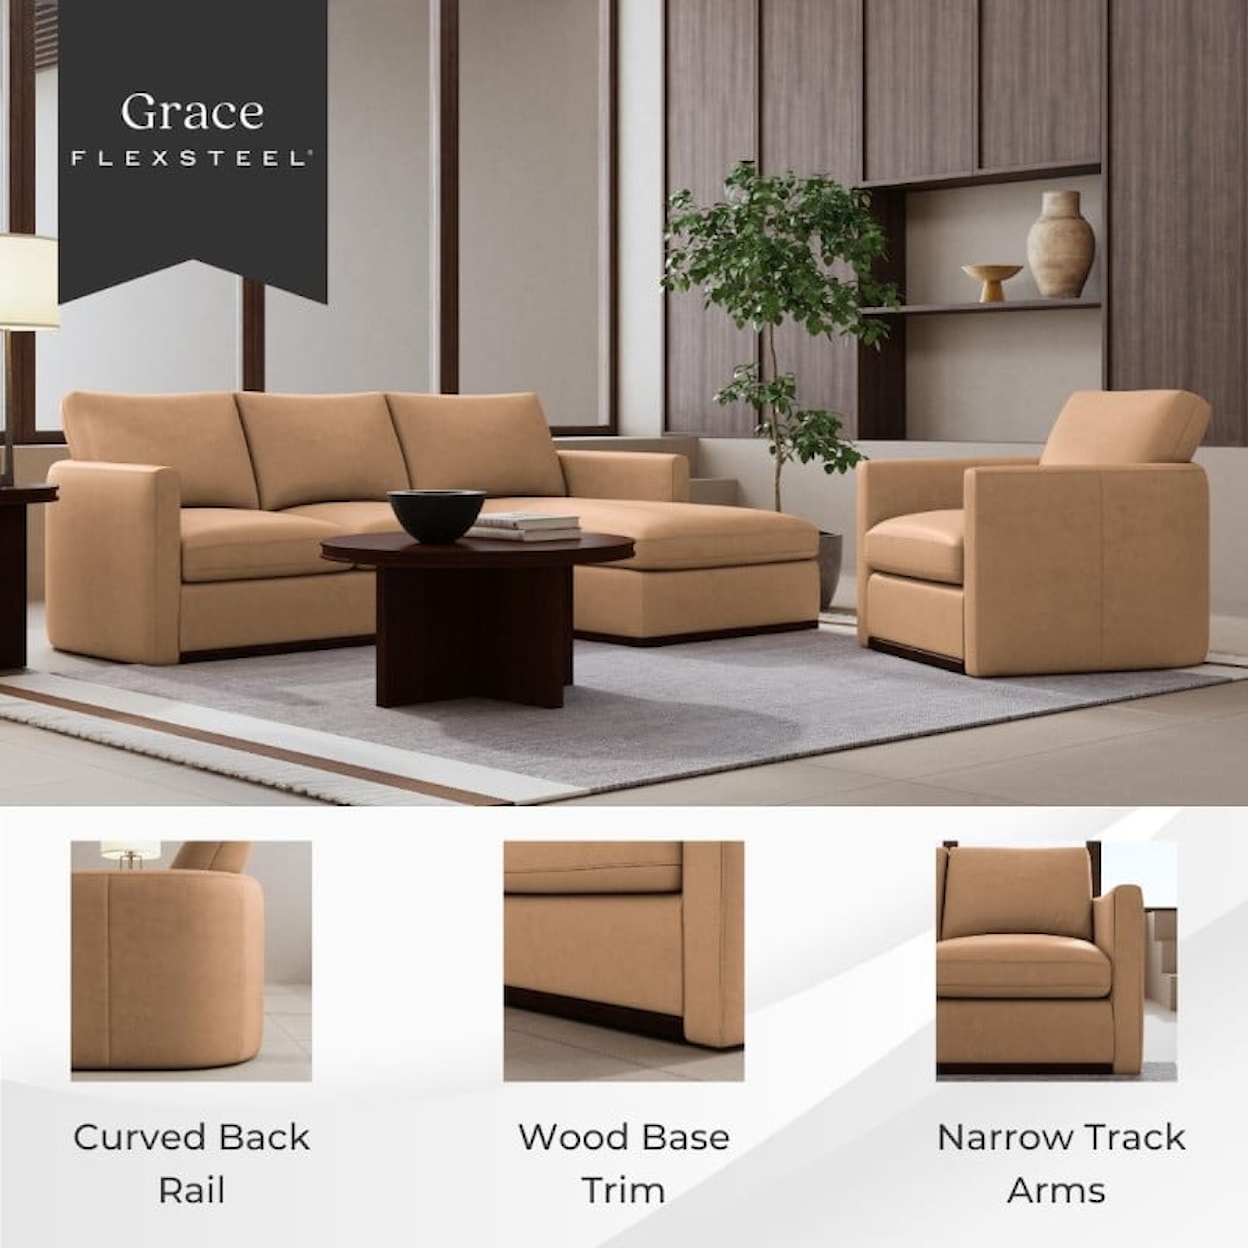 Flexsteel Latitudes- Grace 2-Piece Sectional Sofa